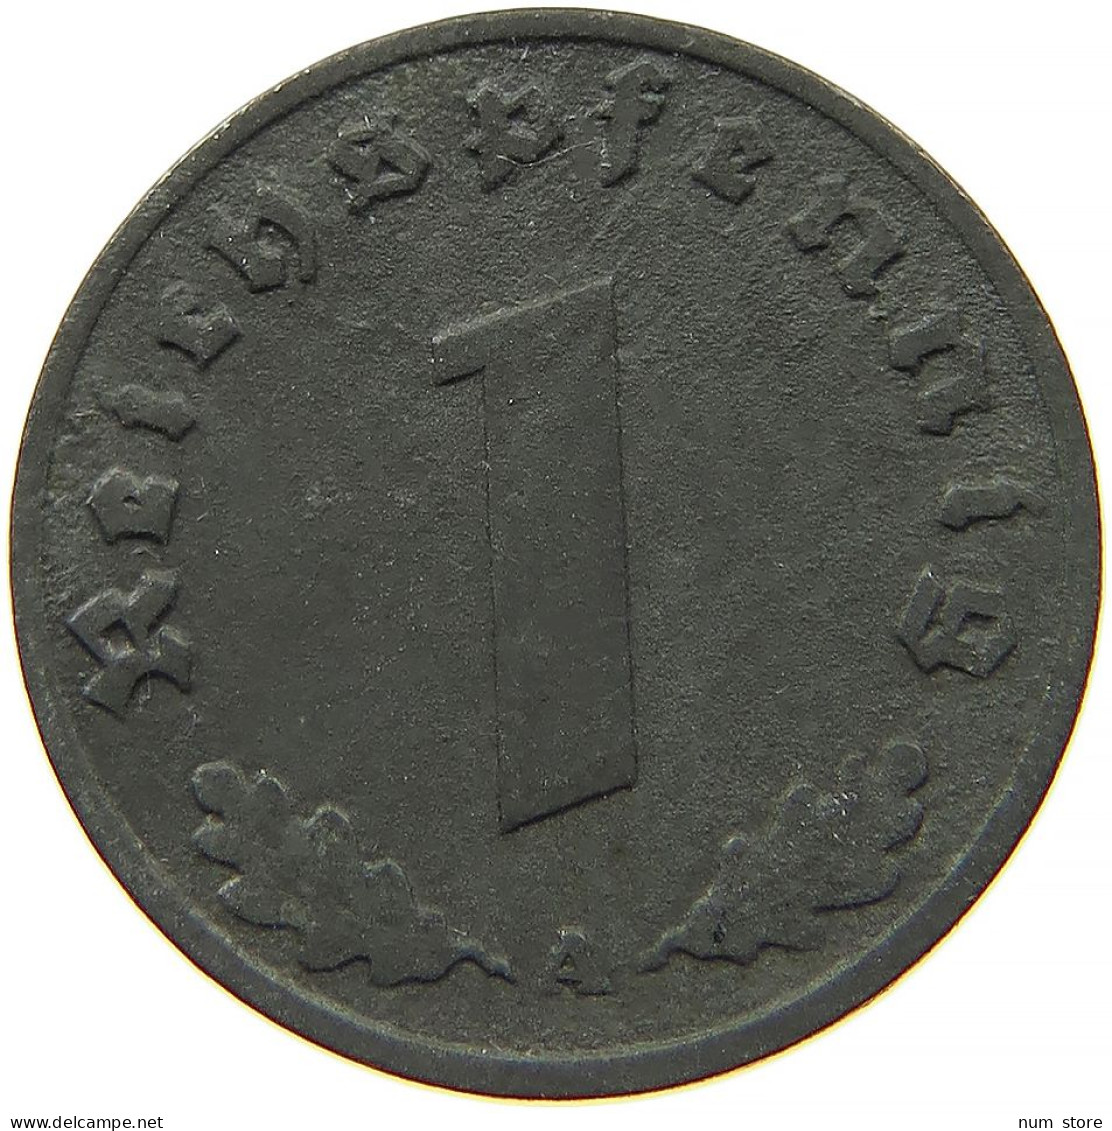 GERMANY 1 REICHSPFENNIG 1940 A #s091 1105 - 1 Reichspfennig